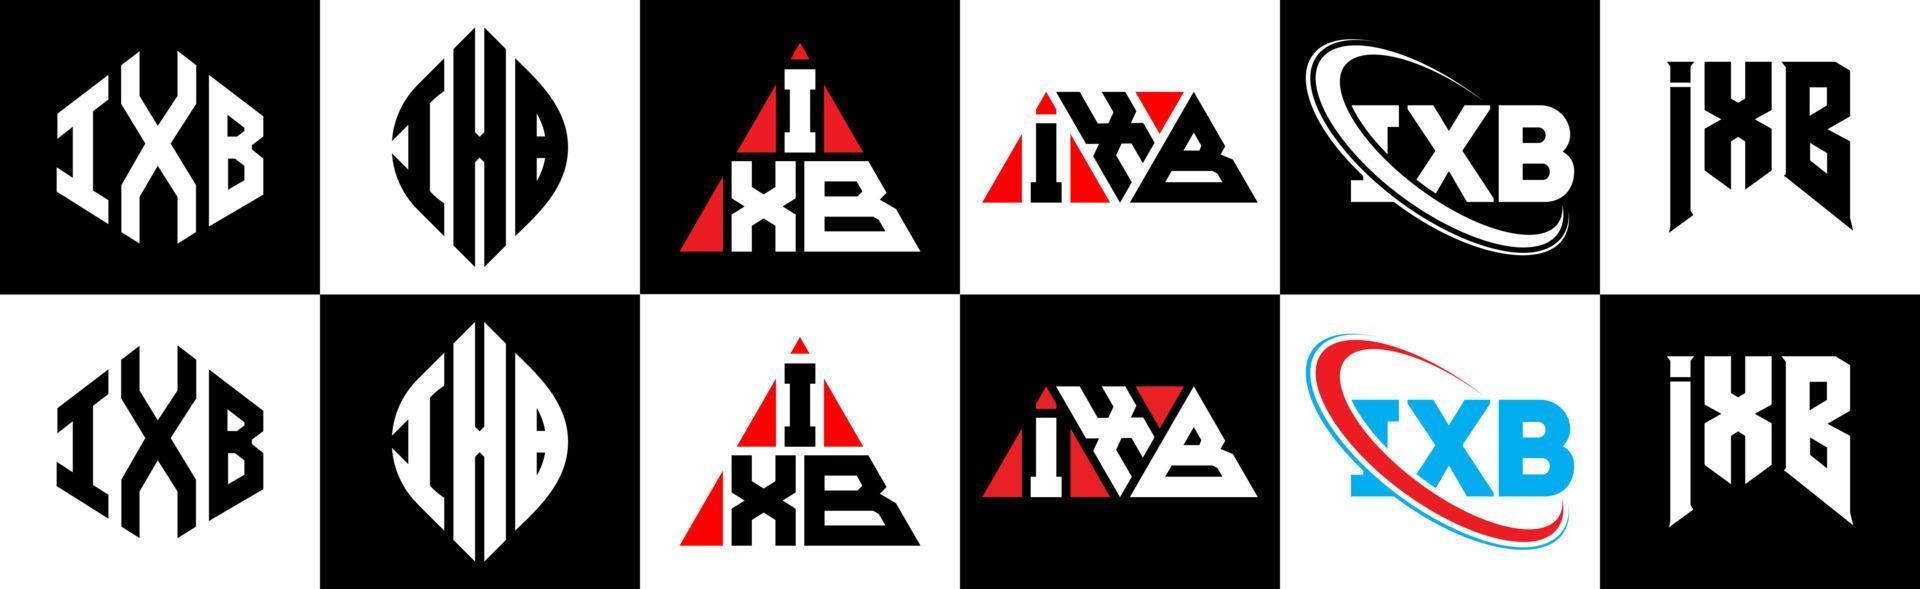 Diseño de logotipo de letra ixb en seis estilos. polígono ixb, círculo, triángulo, hexágono, estilo plano y simple con logotipo de letra de variación de color blanco y negro en una mesa de trabajo. logotipo minimalista y clásico de ixb vector